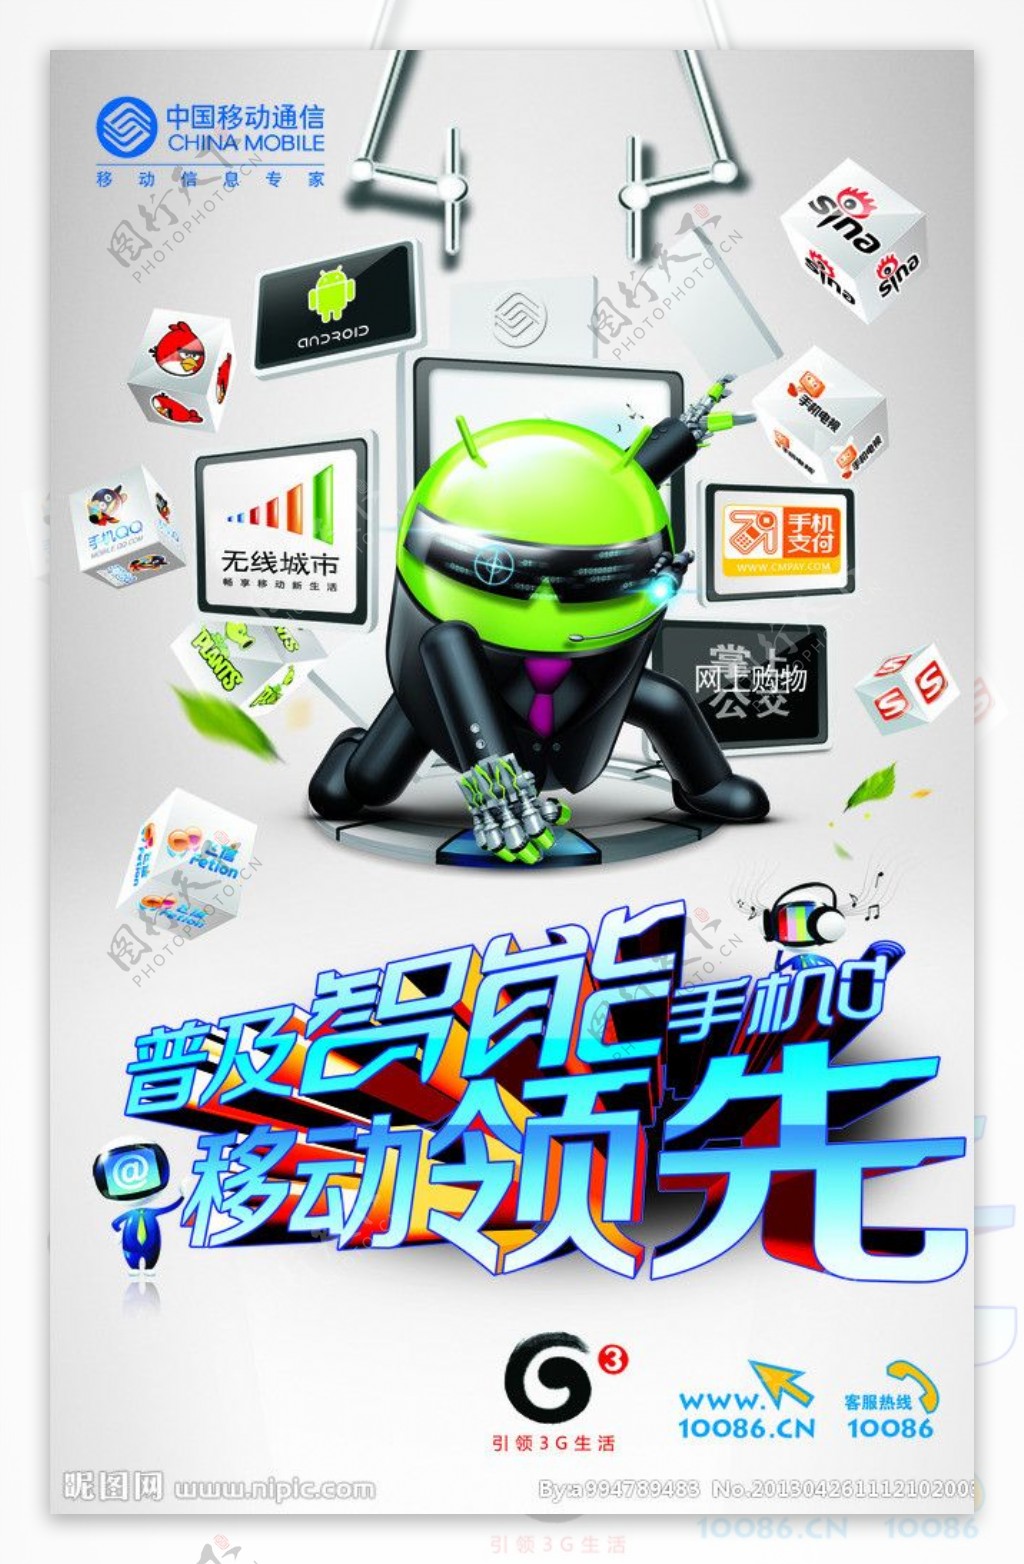 3G智能手机海报图片